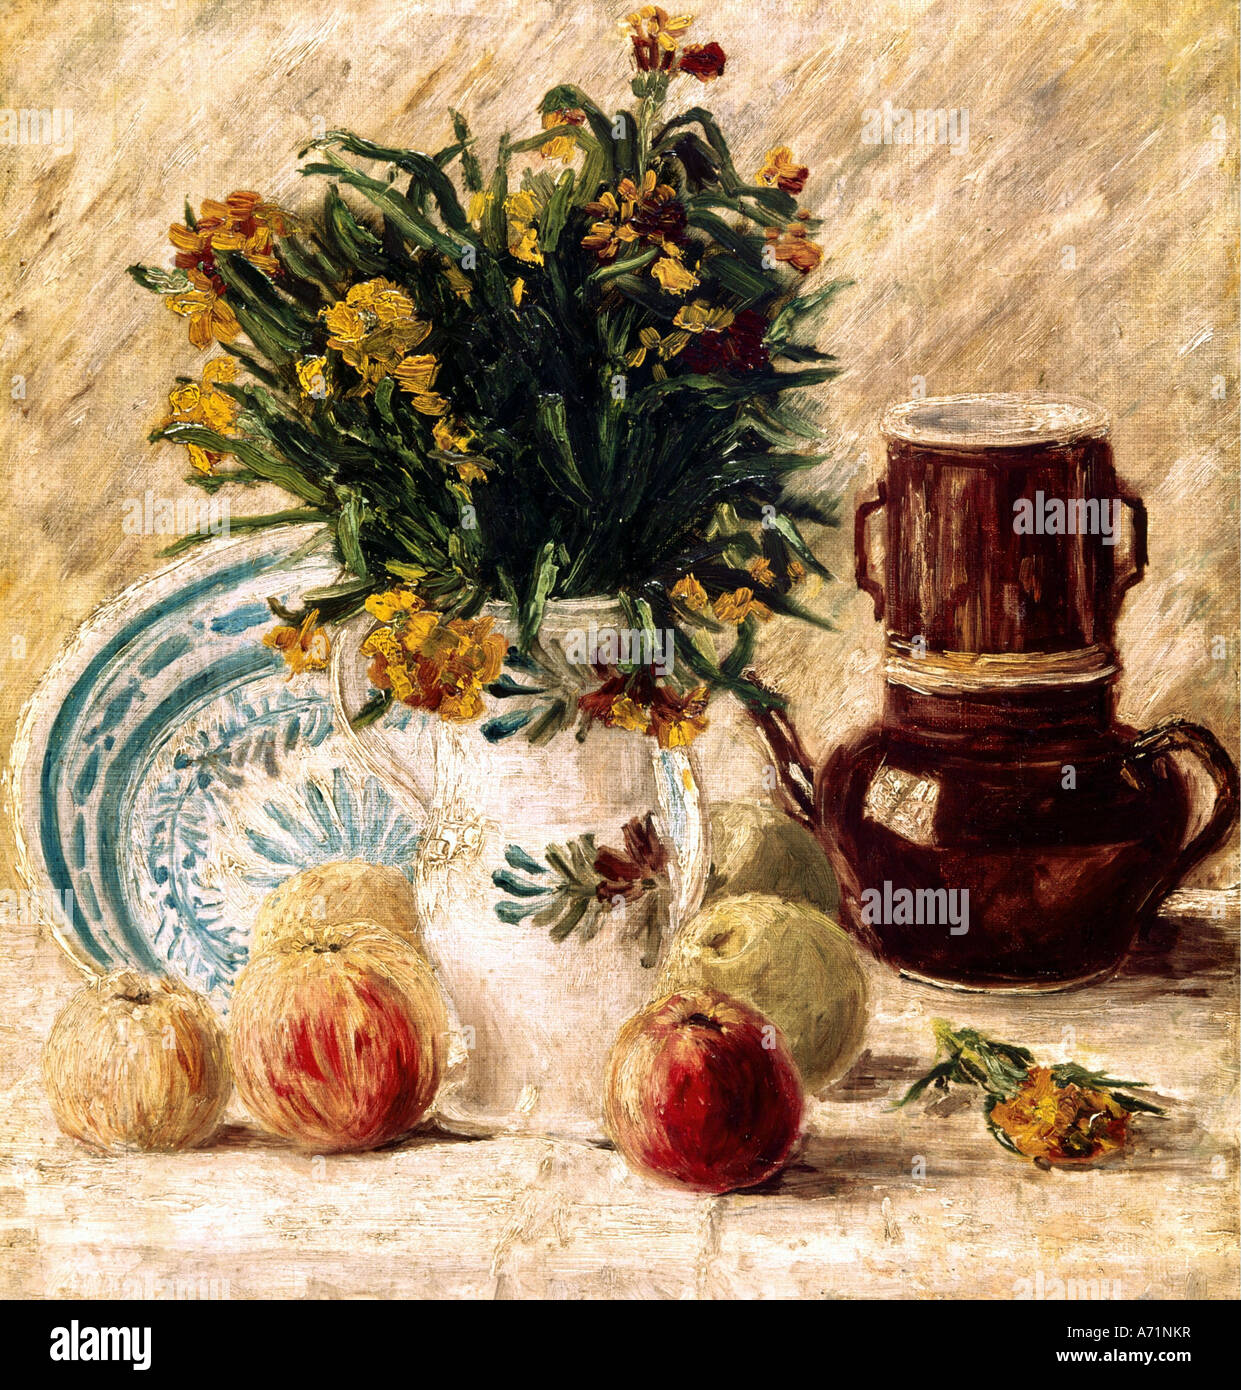 "Belle Arti, Gogh, Vincent van, (1853 - 1890), pittura, 'Still' vita, circa 1886, von der Heydt museum, Wuppertal, storico, h Foto Stock